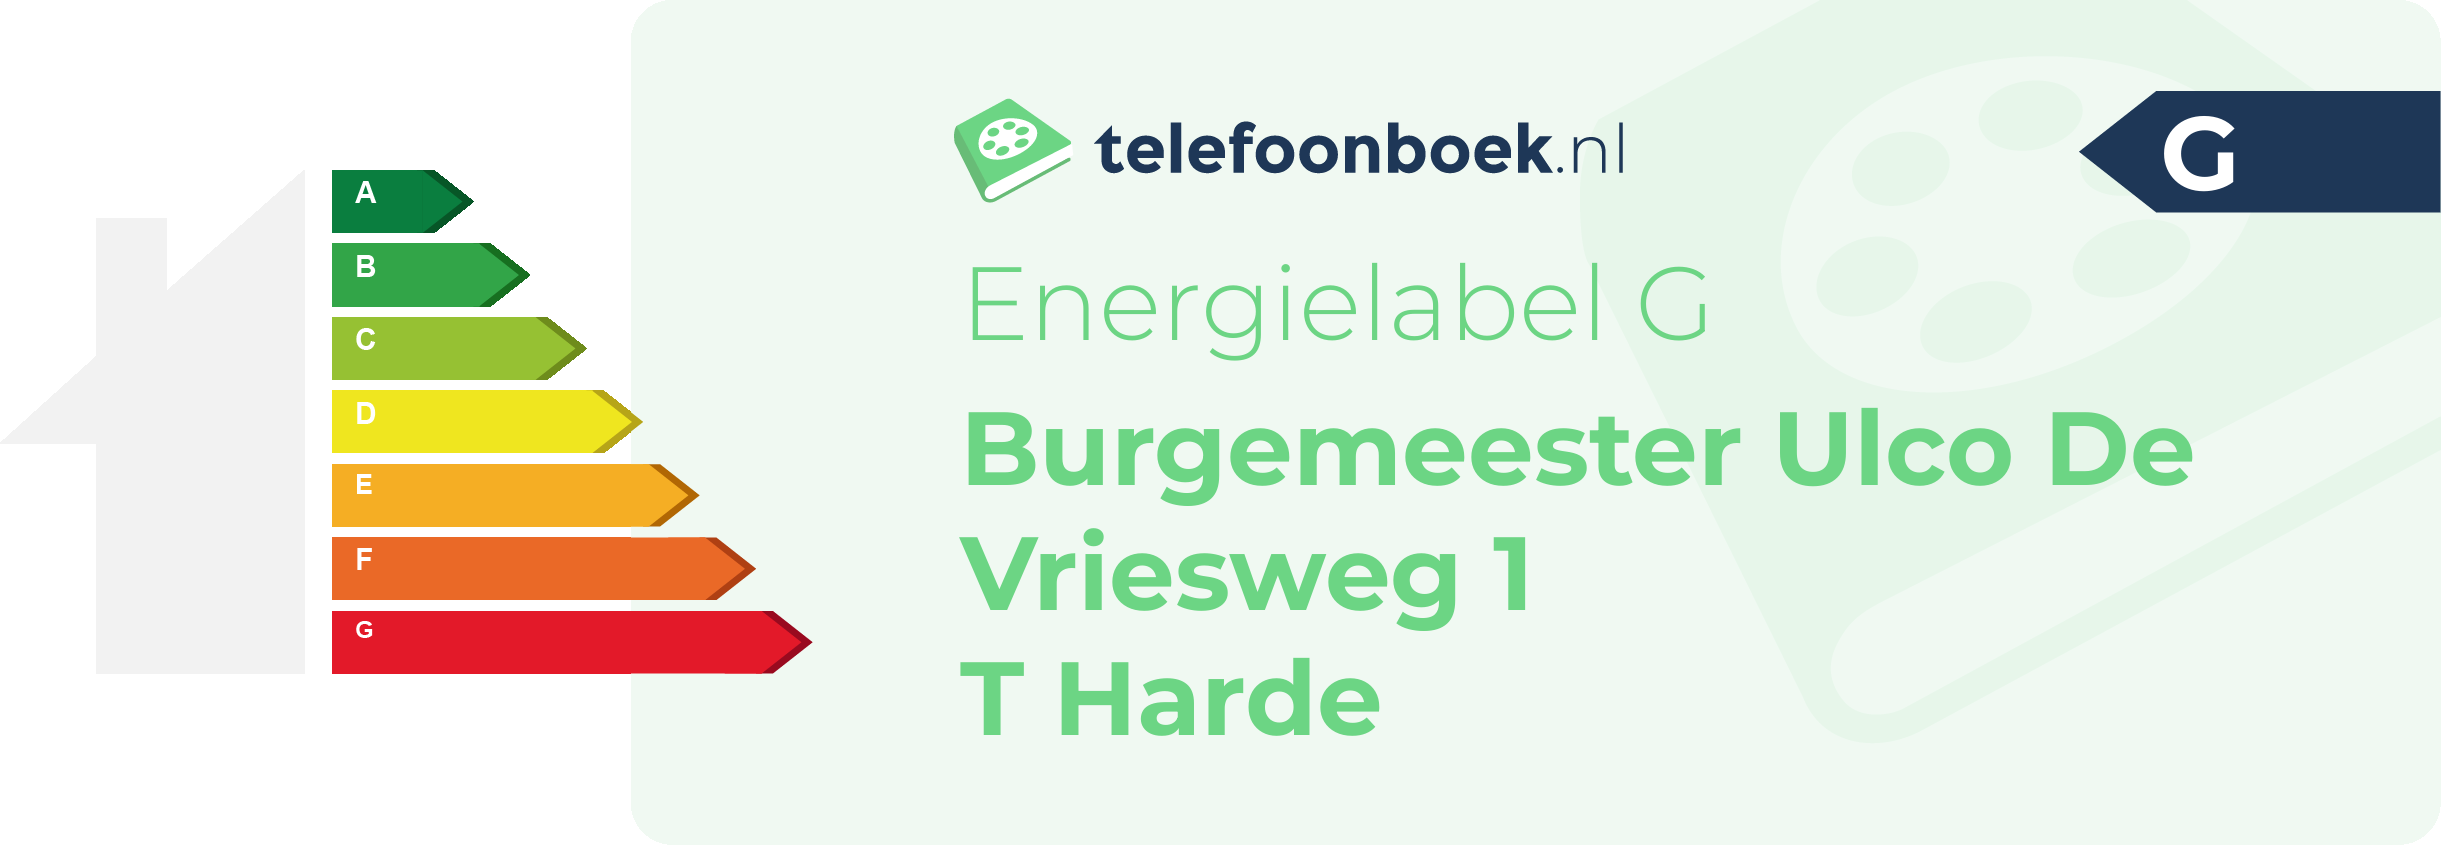 Energielabel Burgemeester Ulco De Vriesweg 1 T Harde